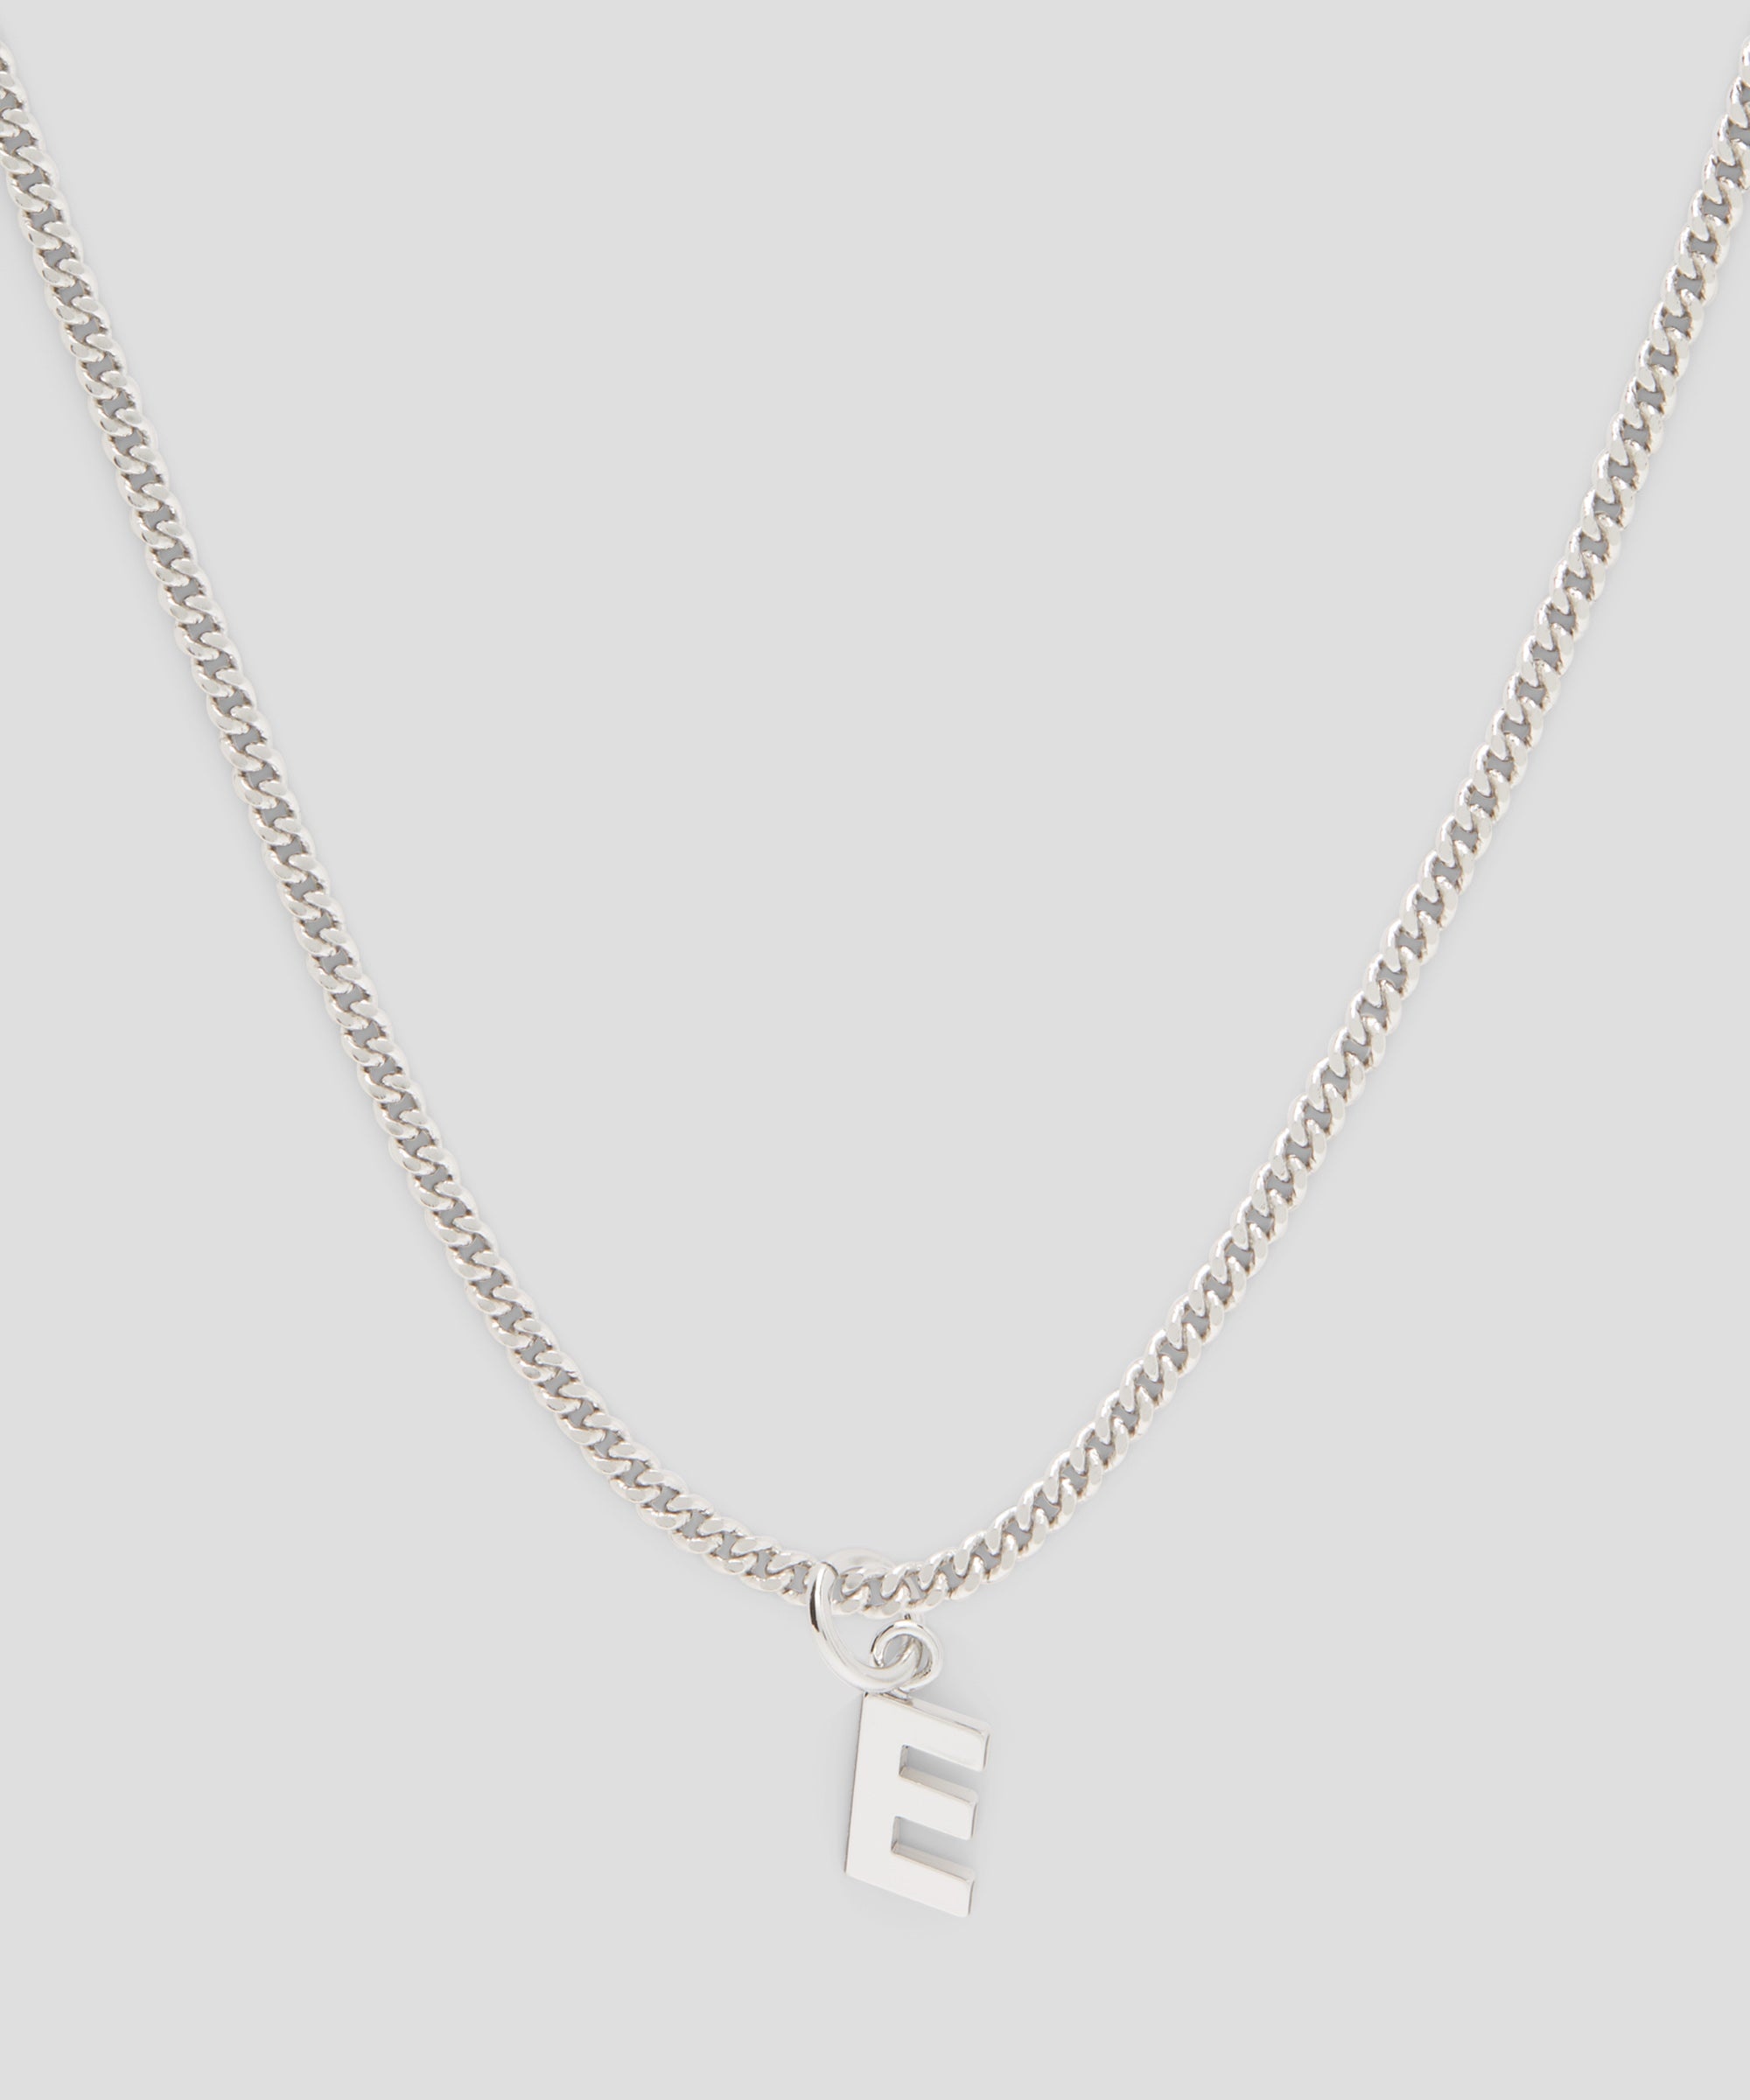 Brass letter E charm - 2